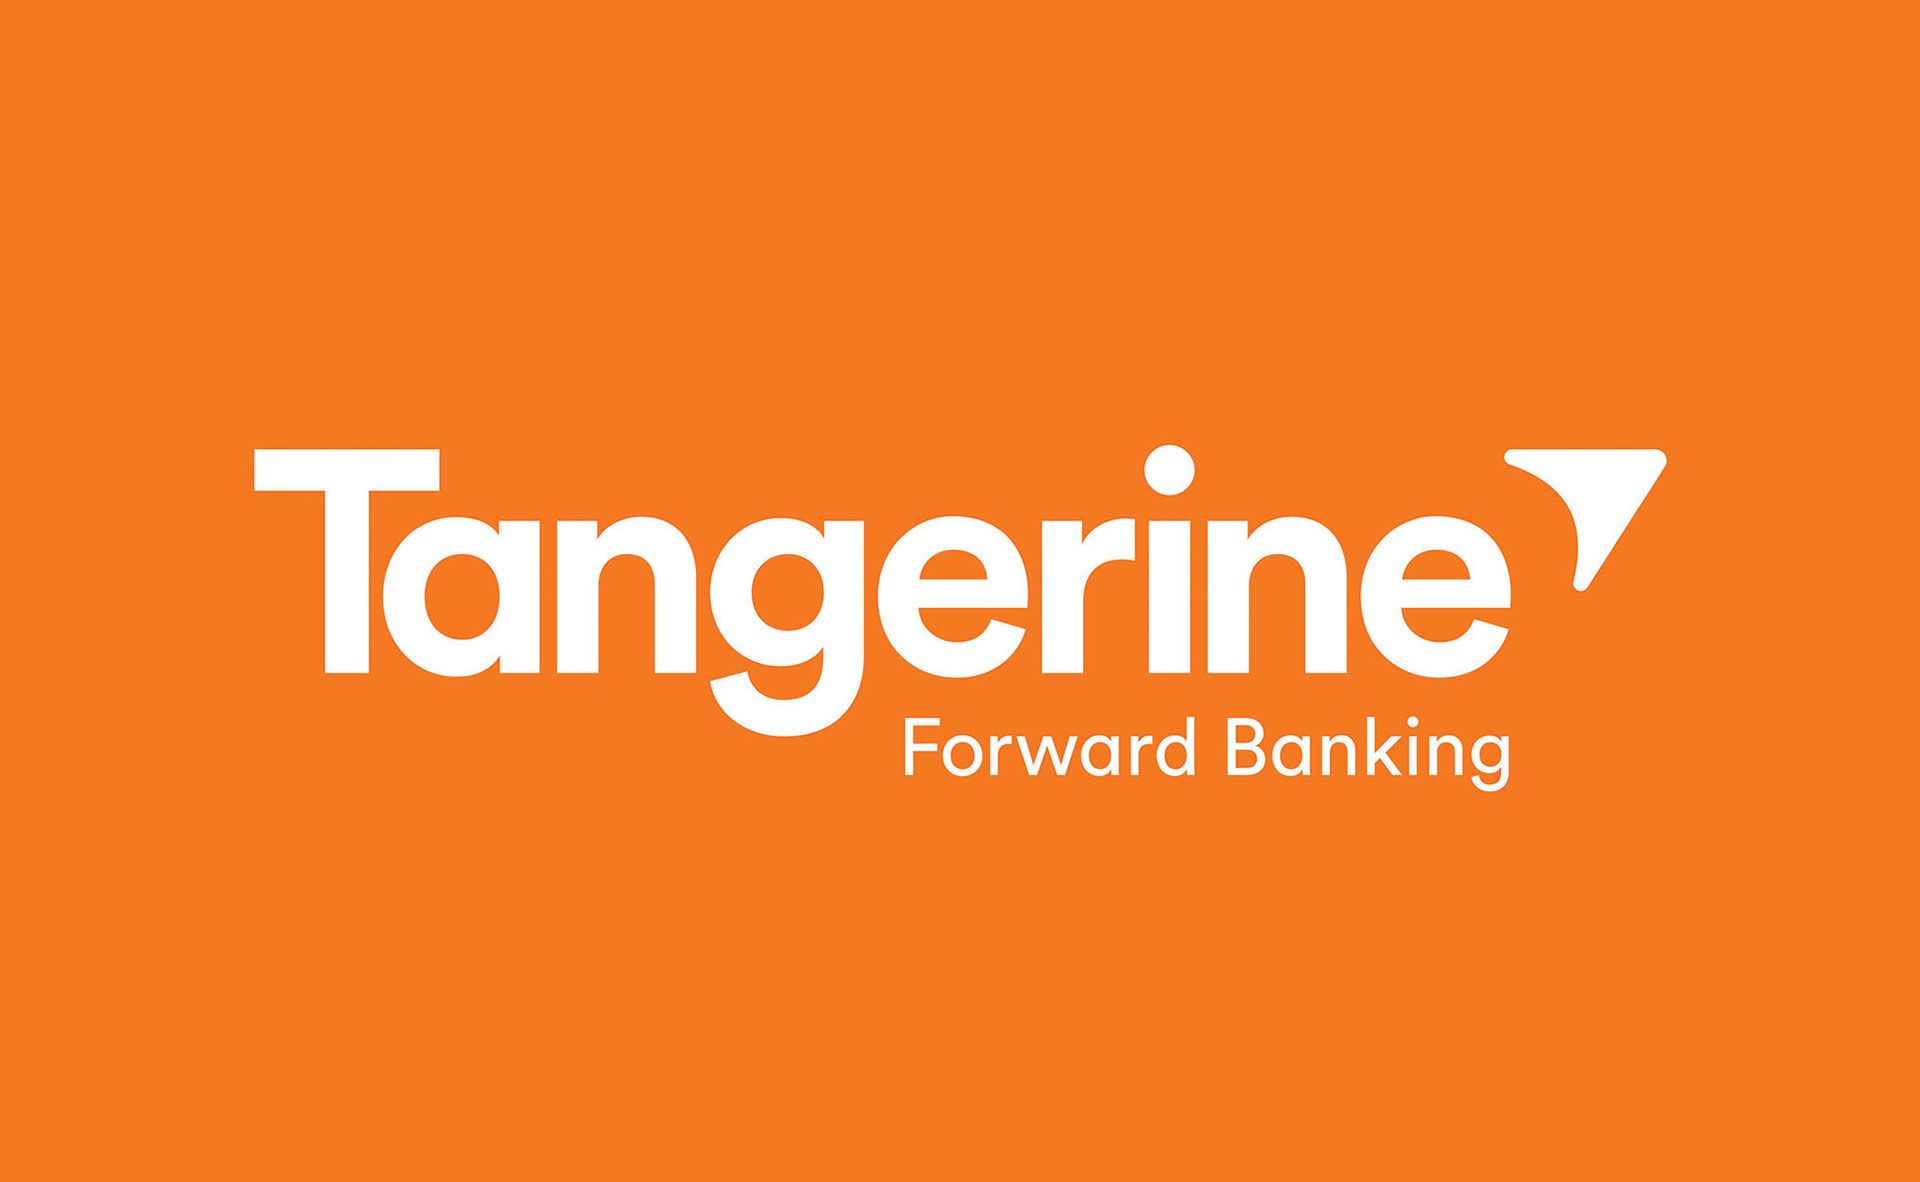 tangerine logo